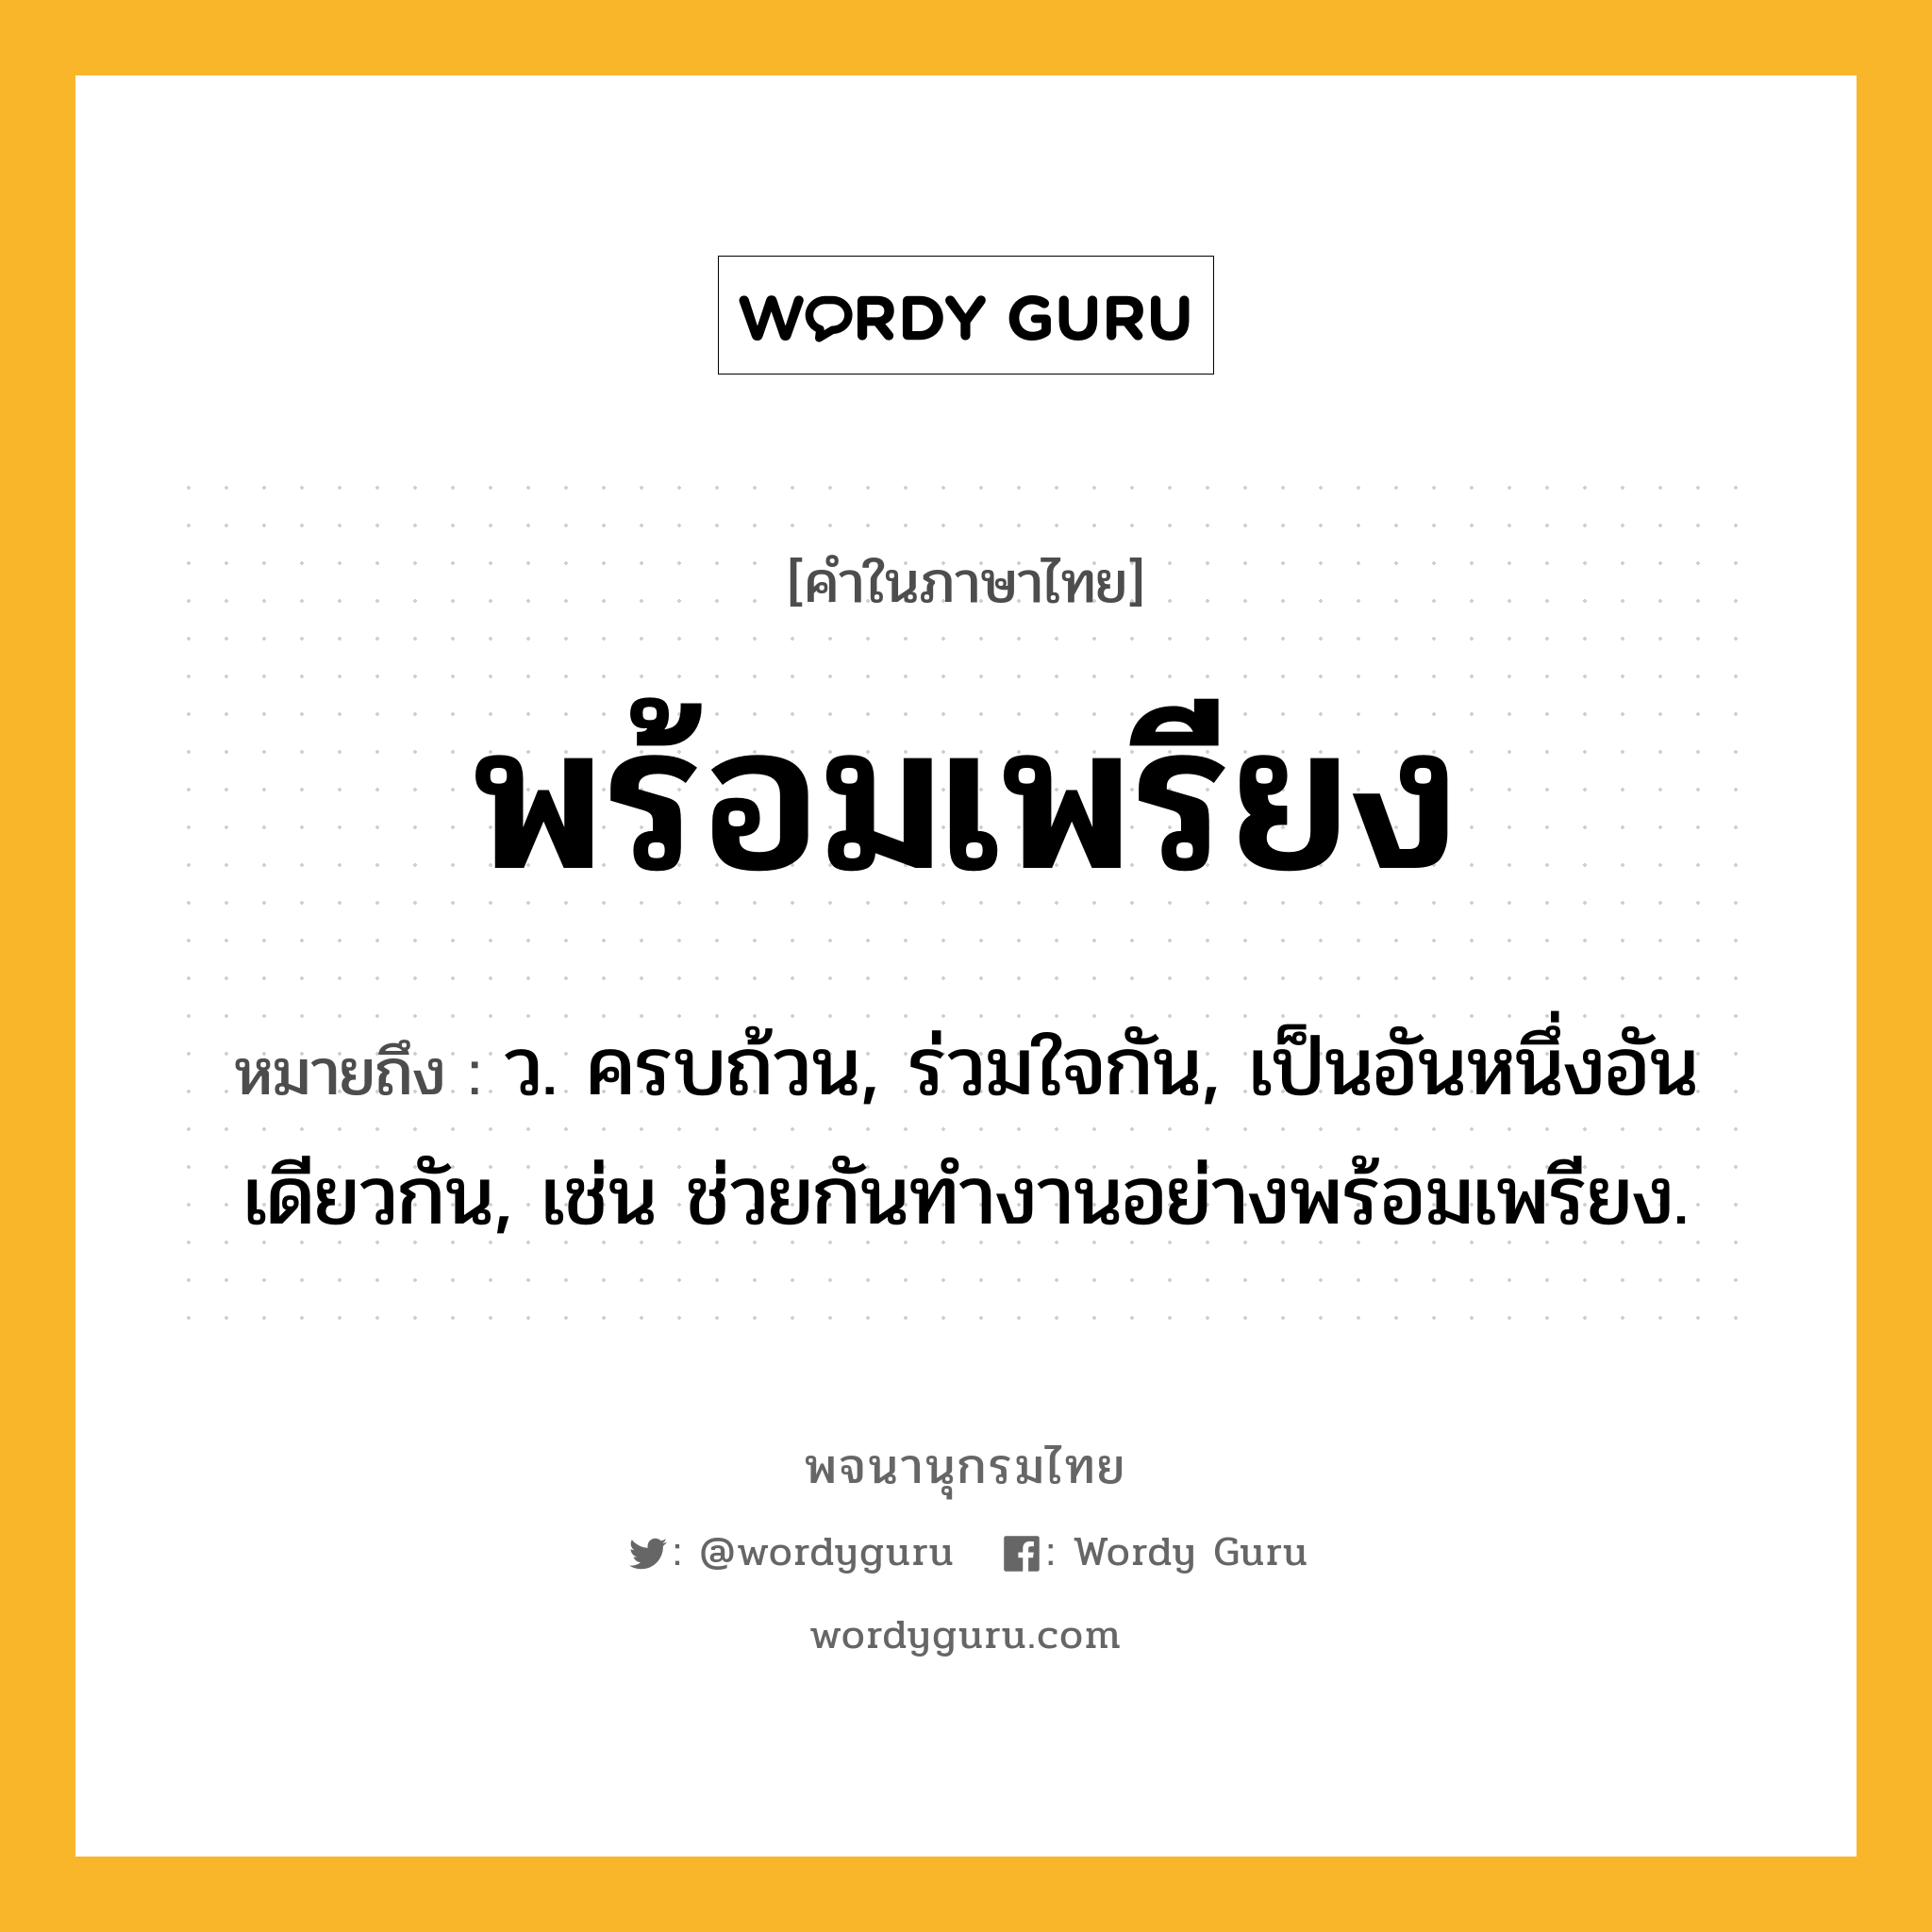 พร้อมเพรียง หมายถึงอะไร?, คำในภาษาไทย พร้อมเพรียง หมายถึง ว. ครบถ้วน, ร่วมใจกัน, เป็นอันหนึ่งอันเดียวกัน, เช่น ช่วยกันทำงานอย่างพร้อมเพรียง.